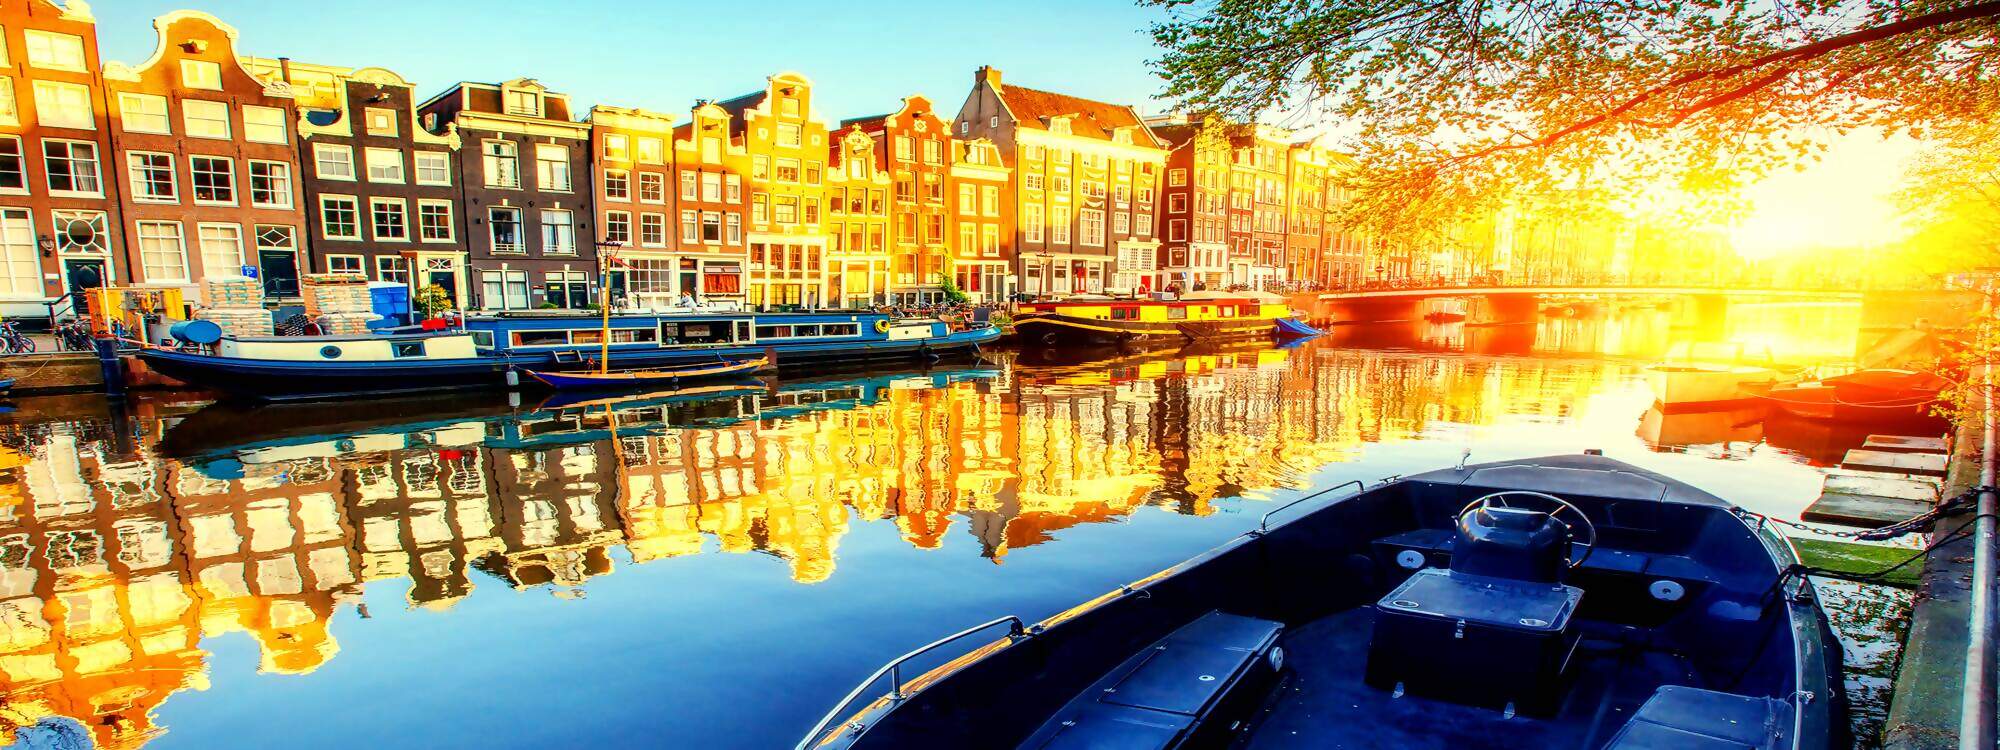 Der Kanal bei Sonnenuntergang in Amsterdam ist die Hauptstadt der Niederlande